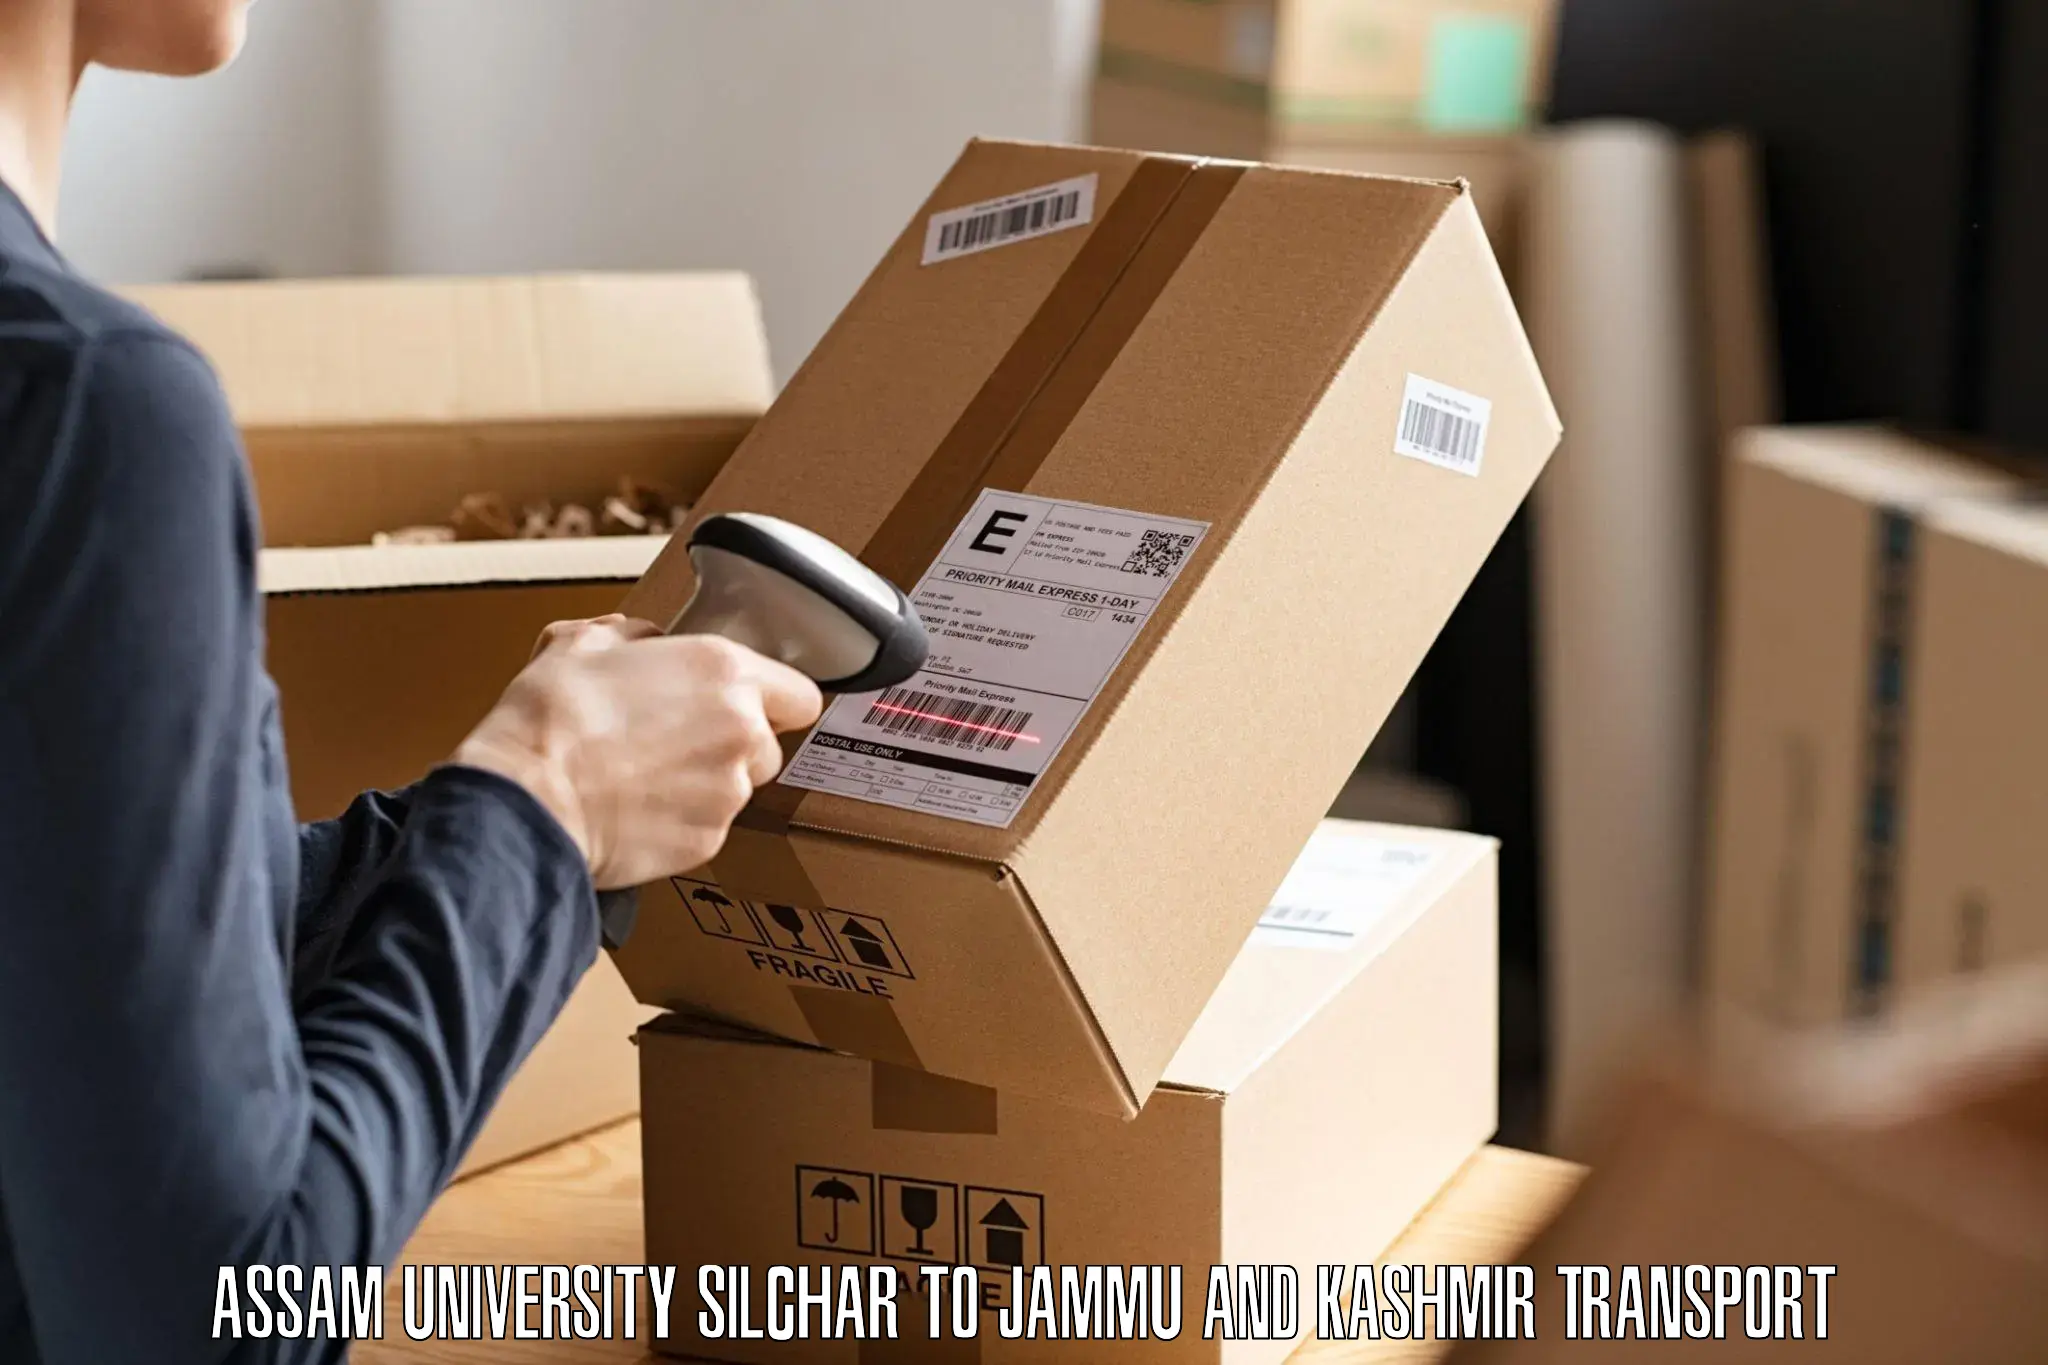 Pick up transport service Assam University Silchar to Sunderbani